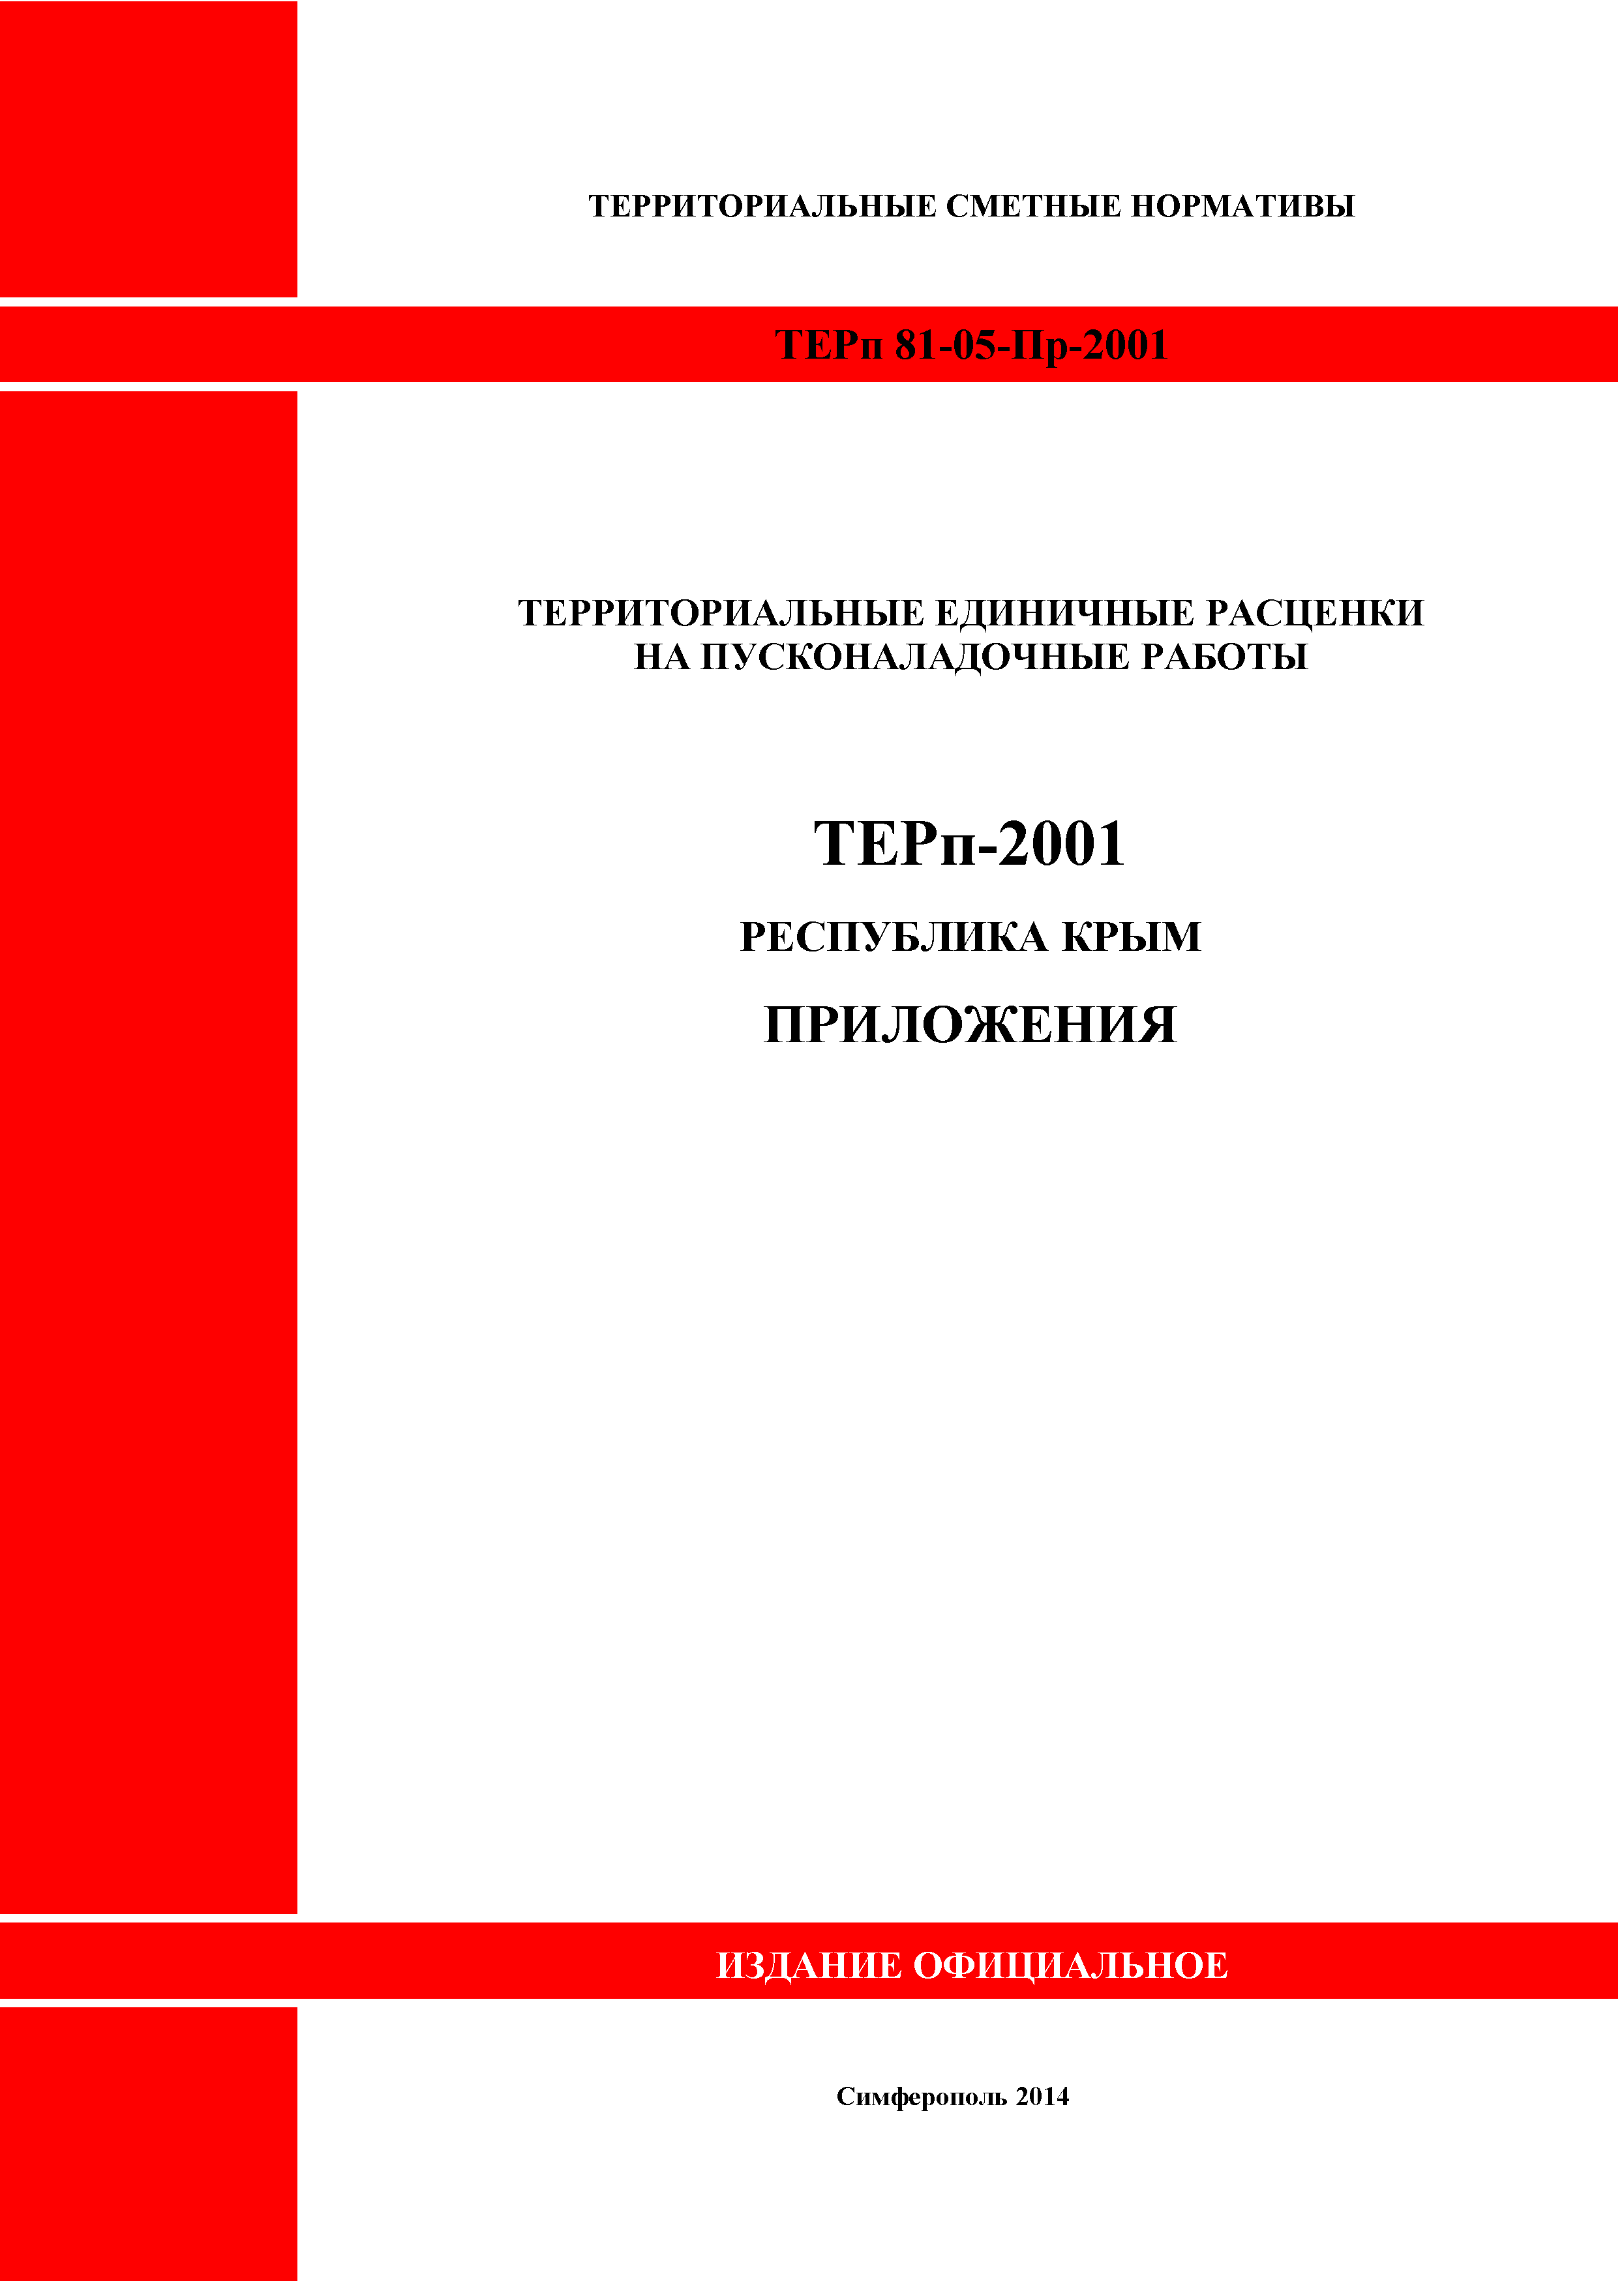 ТЕРп 2001 Республика Крым